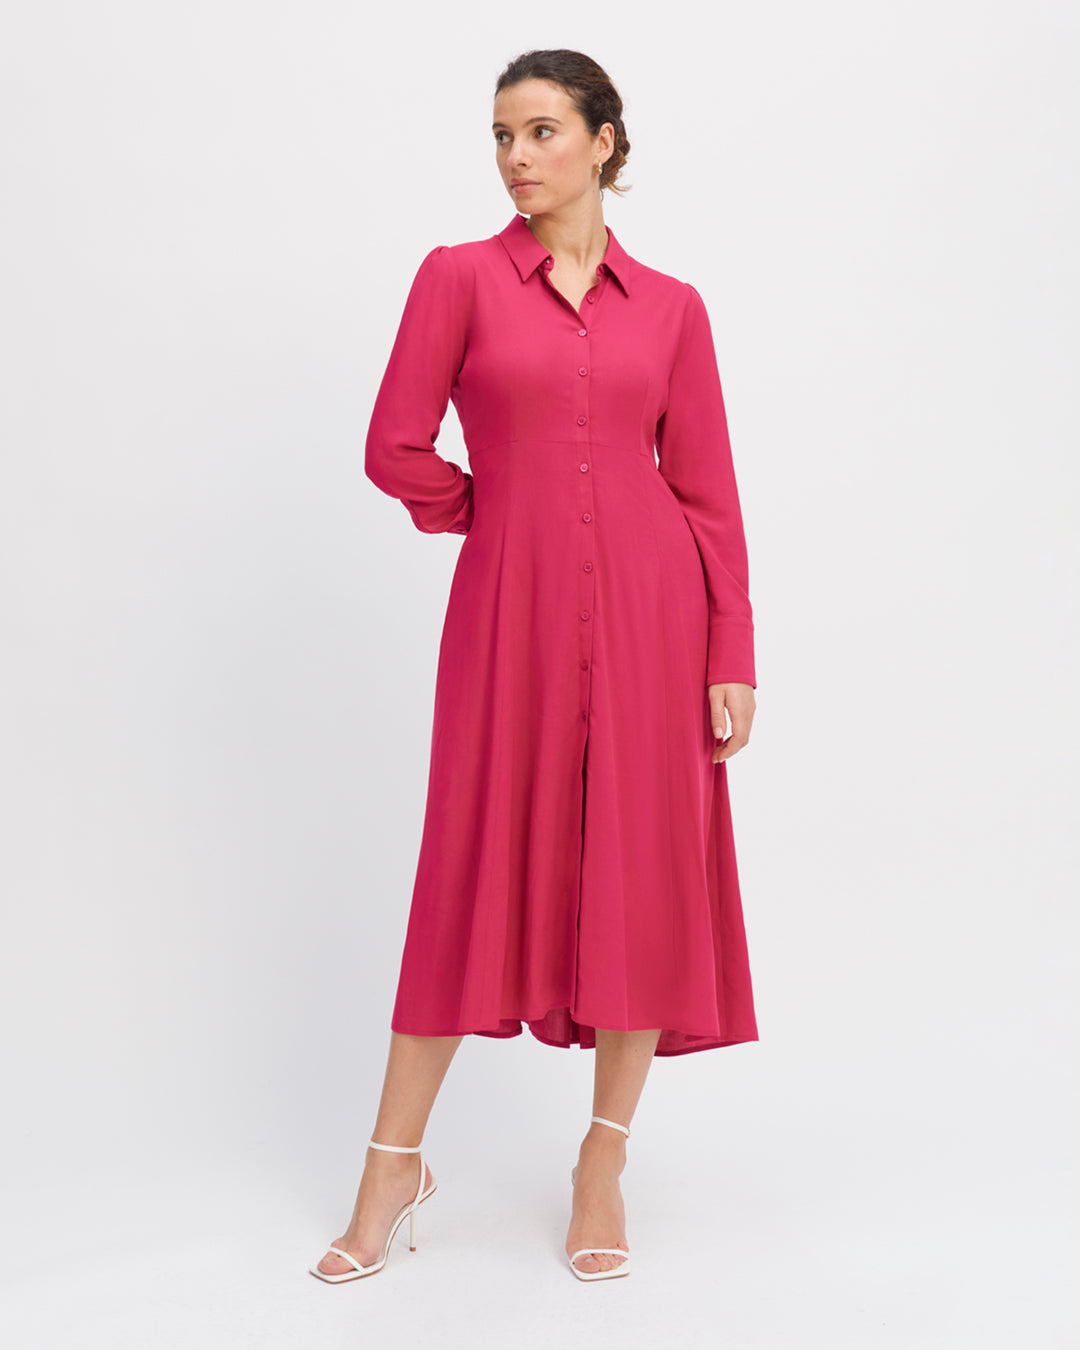 Robe-rose-Longueur-midi-Col-chemise-Manche-longues-avec-poignets-boutonnés-Patte-de-boutonnage-cachée-Cintrée-à-la-taille-17H10-tailleurs-pour-femme-paris-